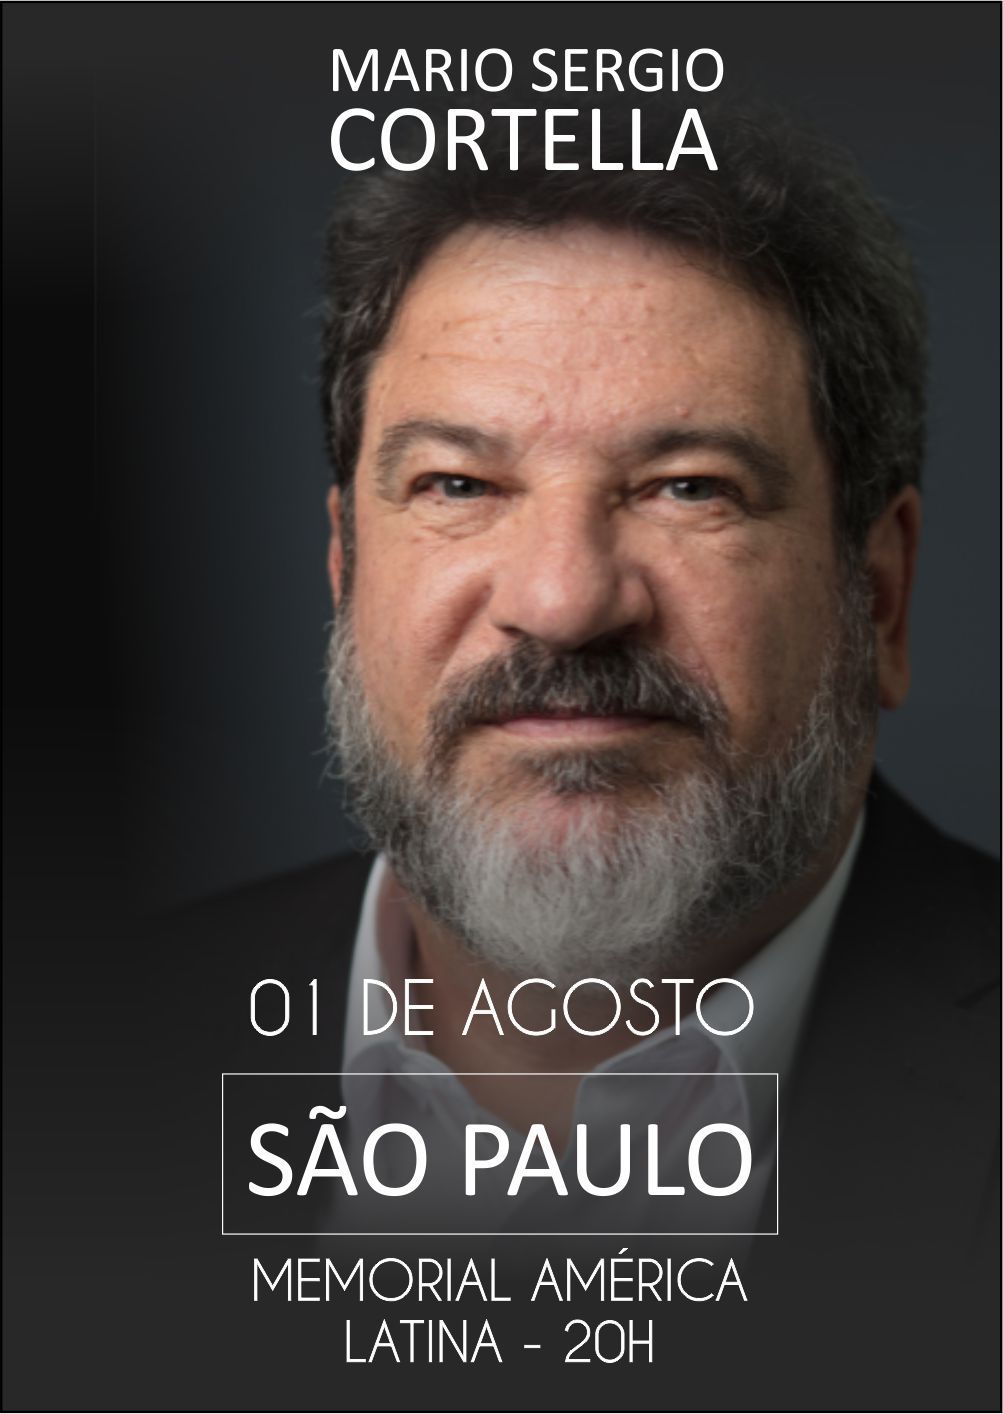 01.AGOSTO.2019 | São Paulo SP 20h  "Superar, Inovar e Transformar - A Sorte Segue a Coragem"